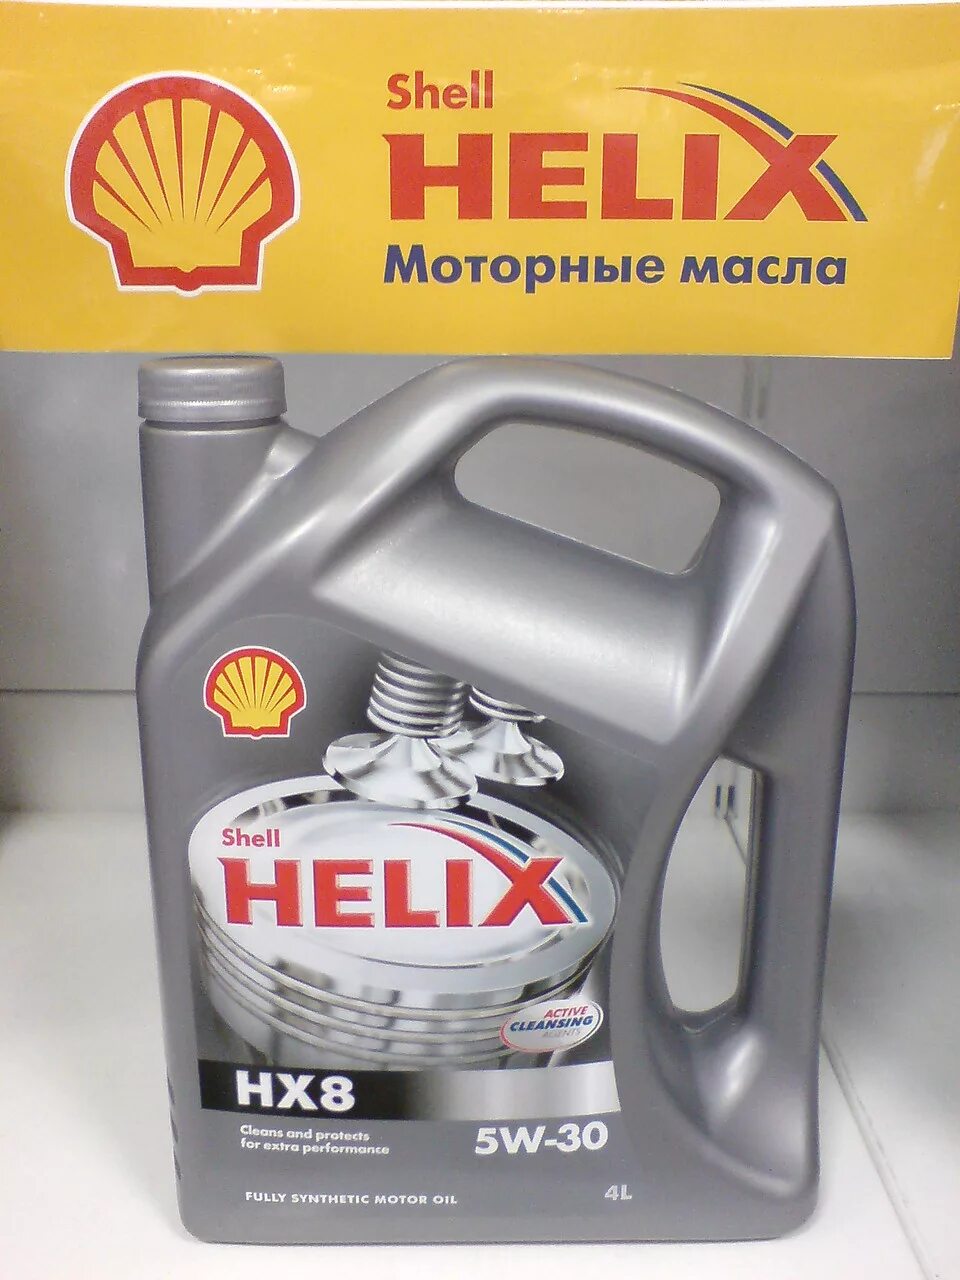 Моторное масло Шелл Хеликс 5w30. Масло моторное 5w30 синтетика Шелл Хеликс. Синтетическое моторное масло Shell Helix hx8 Synthetic 5w-30, 4 л. Shell моторное 5w30 hx8. Масло шелл hx8 купить